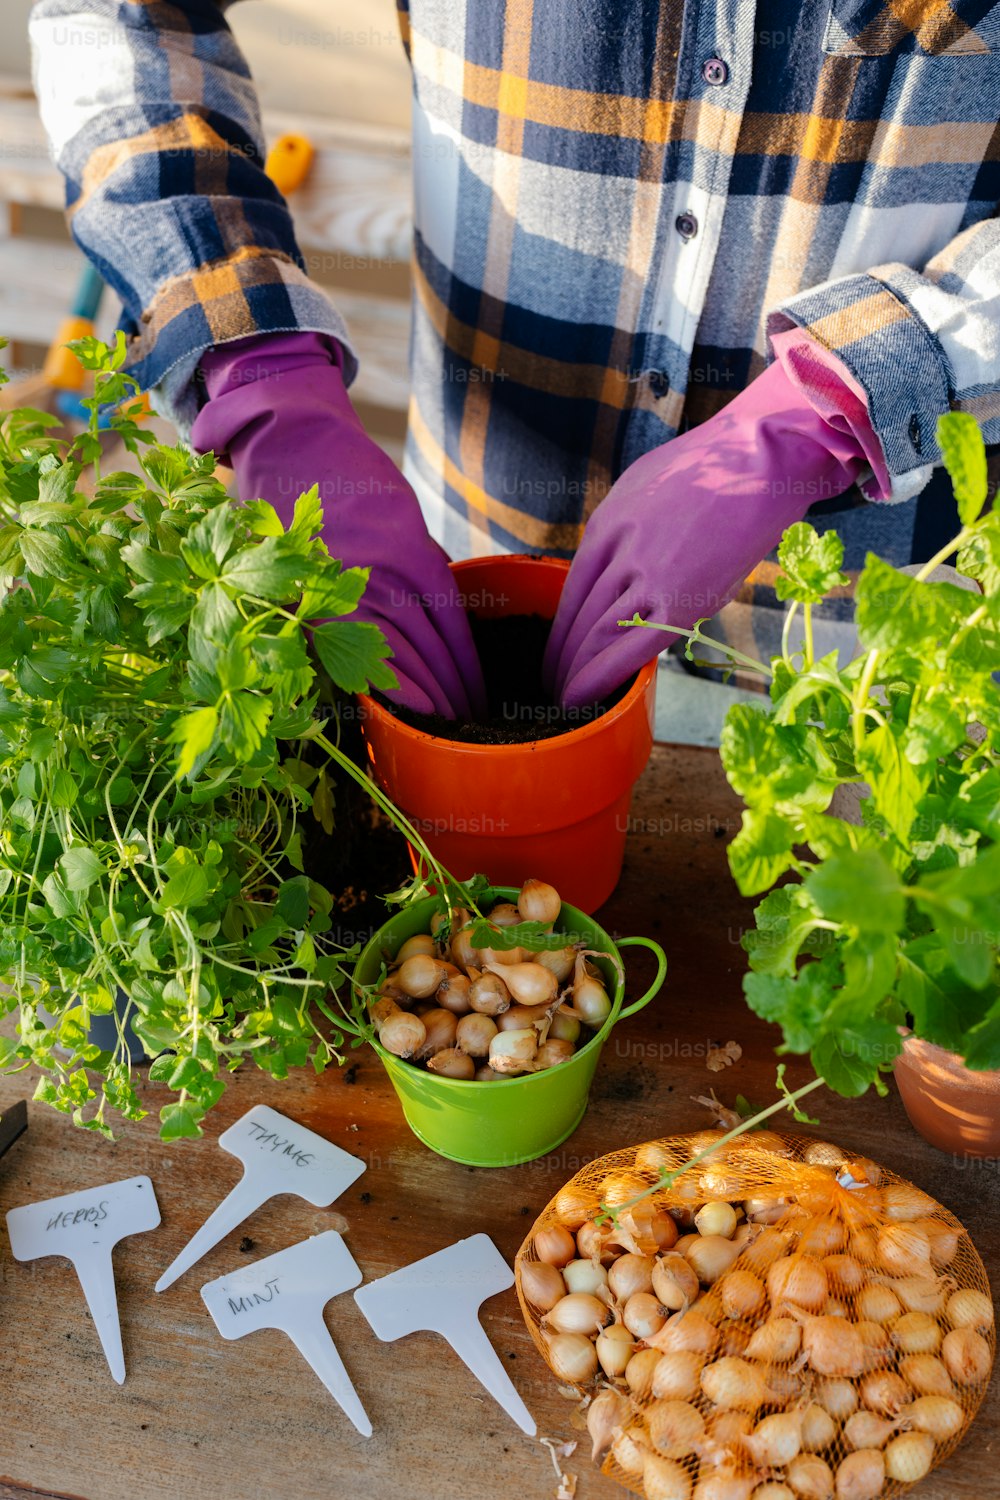 鉢植えの植物の隣に紫色の手袋と園芸用手袋を着用している人